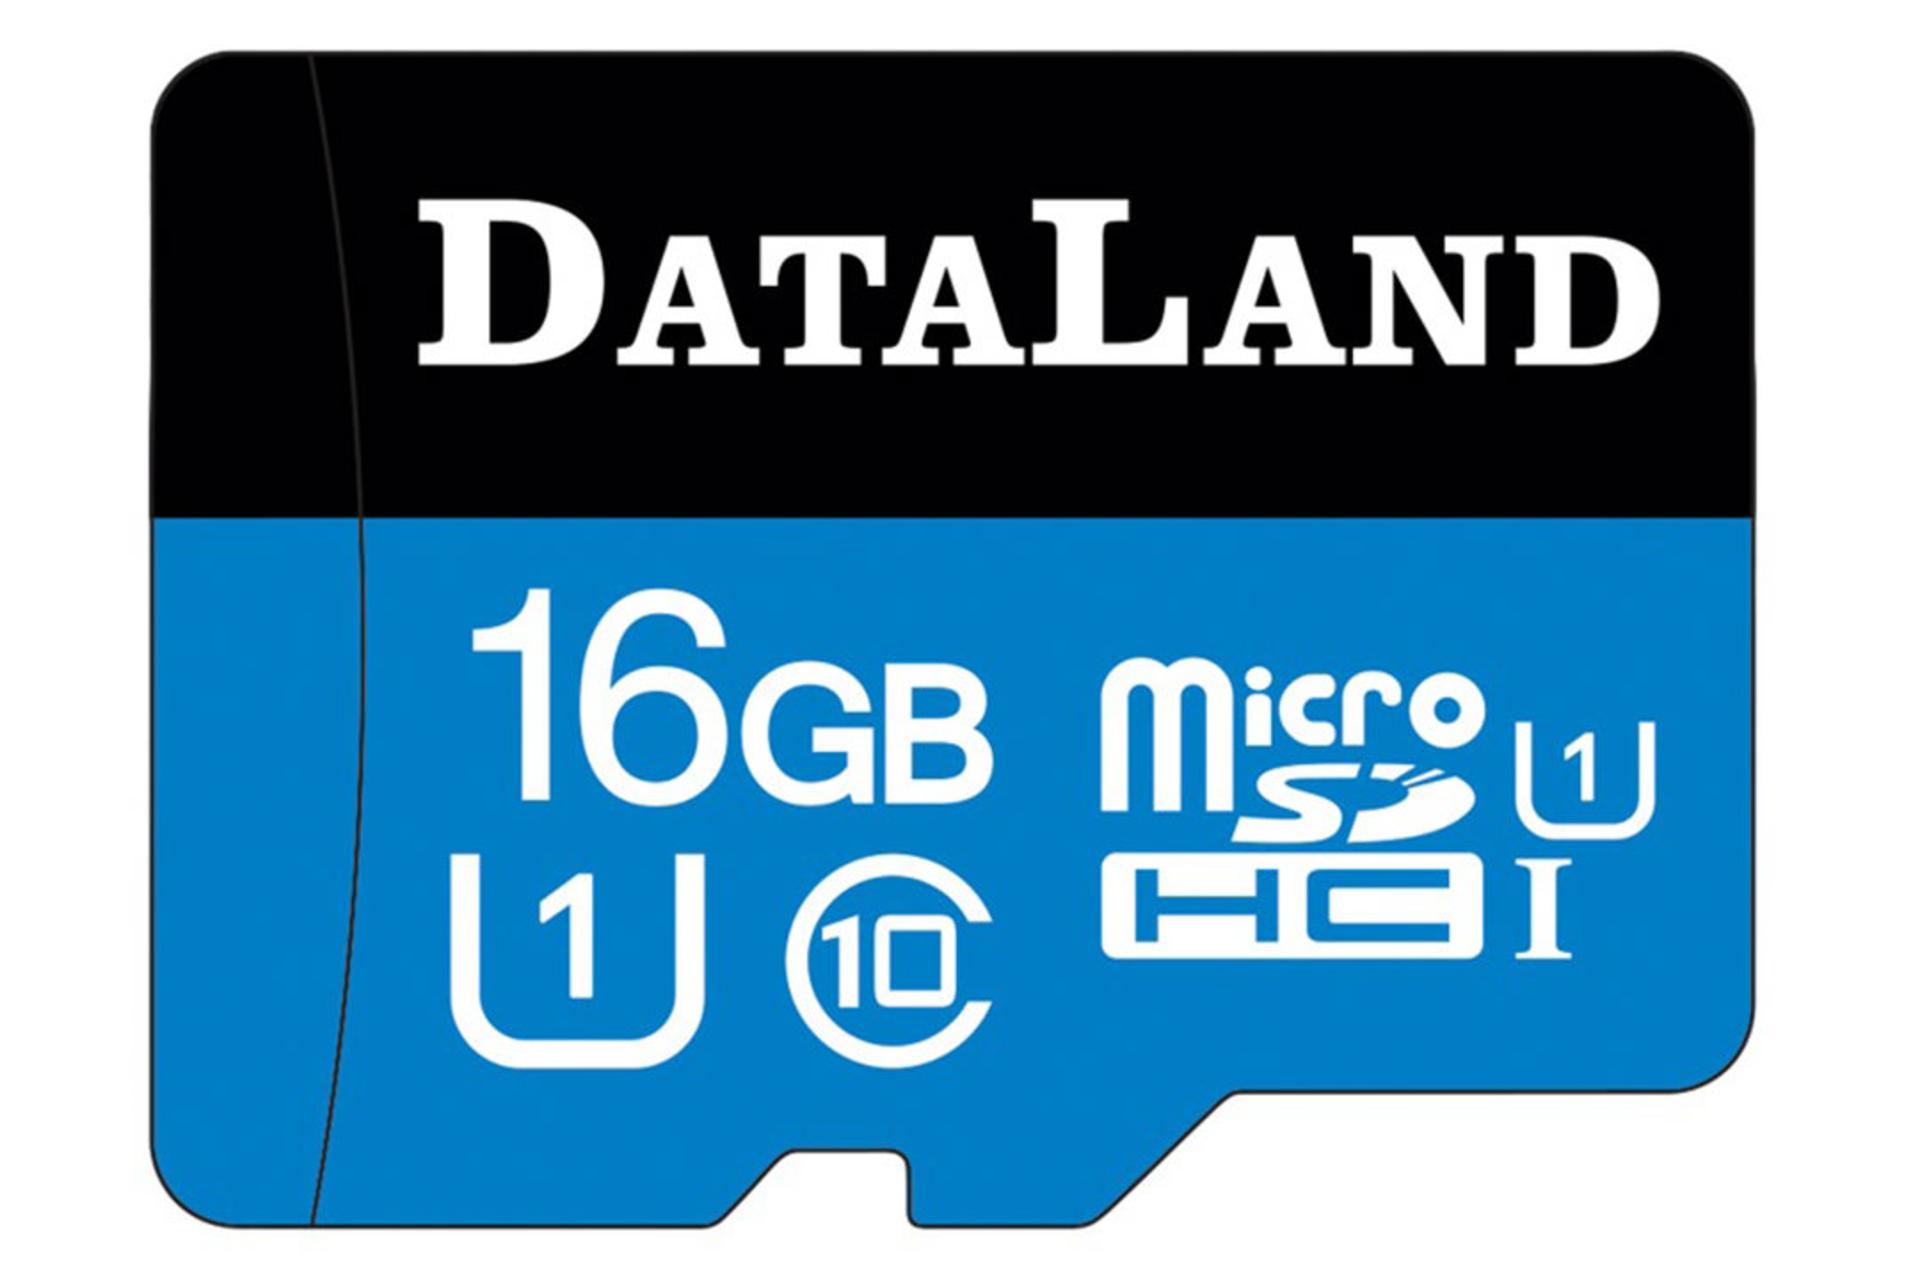 مرجع متخصصين ايران DataLand 533x microSDHC Class 10 UHS-I U1 16GB